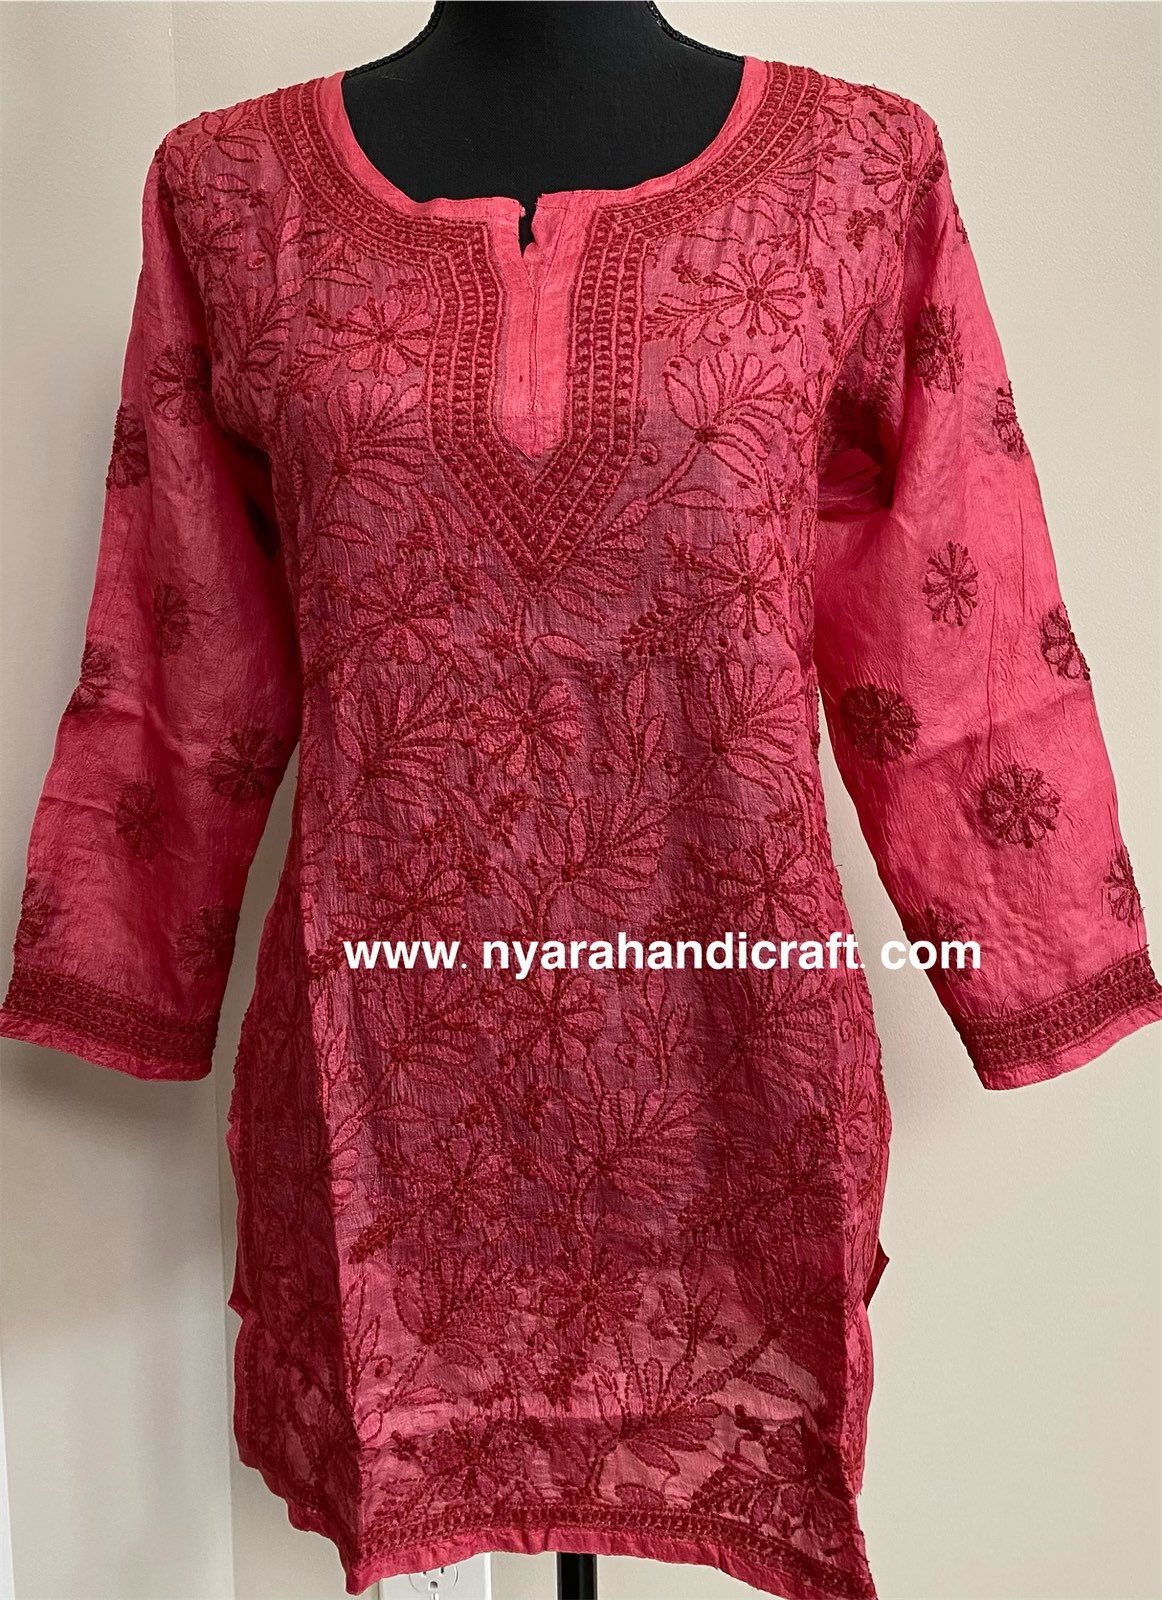 Buy NIYRA Women's Cotton Handicraft Lucknow Chikankari Shirt Style Short  Kurti (Off-White, 40) at Amazon.in